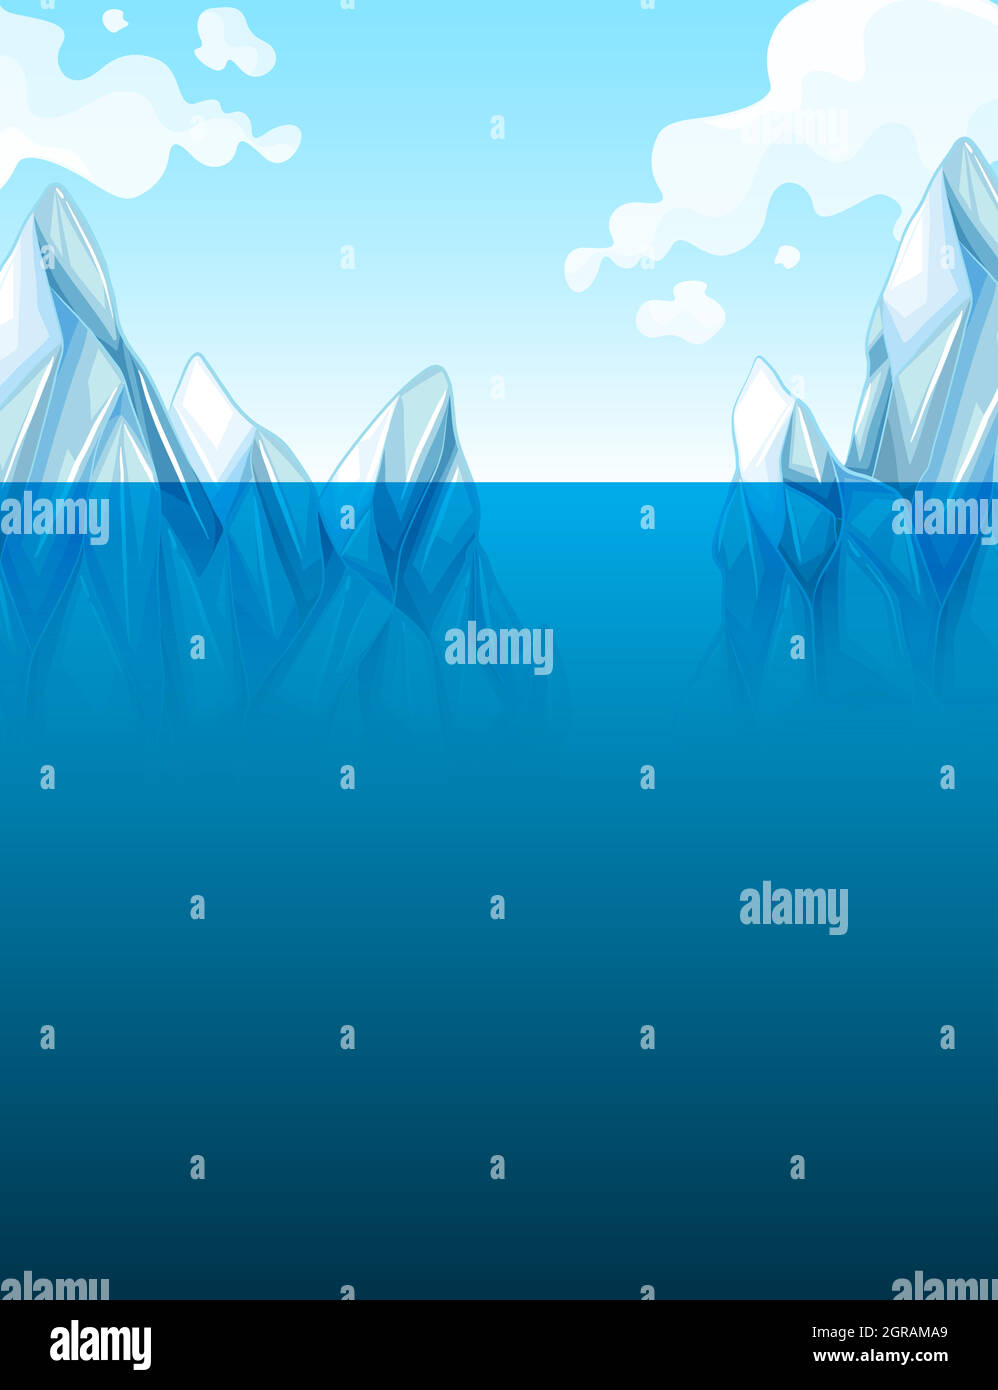 Réchauffement climatique avec iceberg Illustration de Vecteur